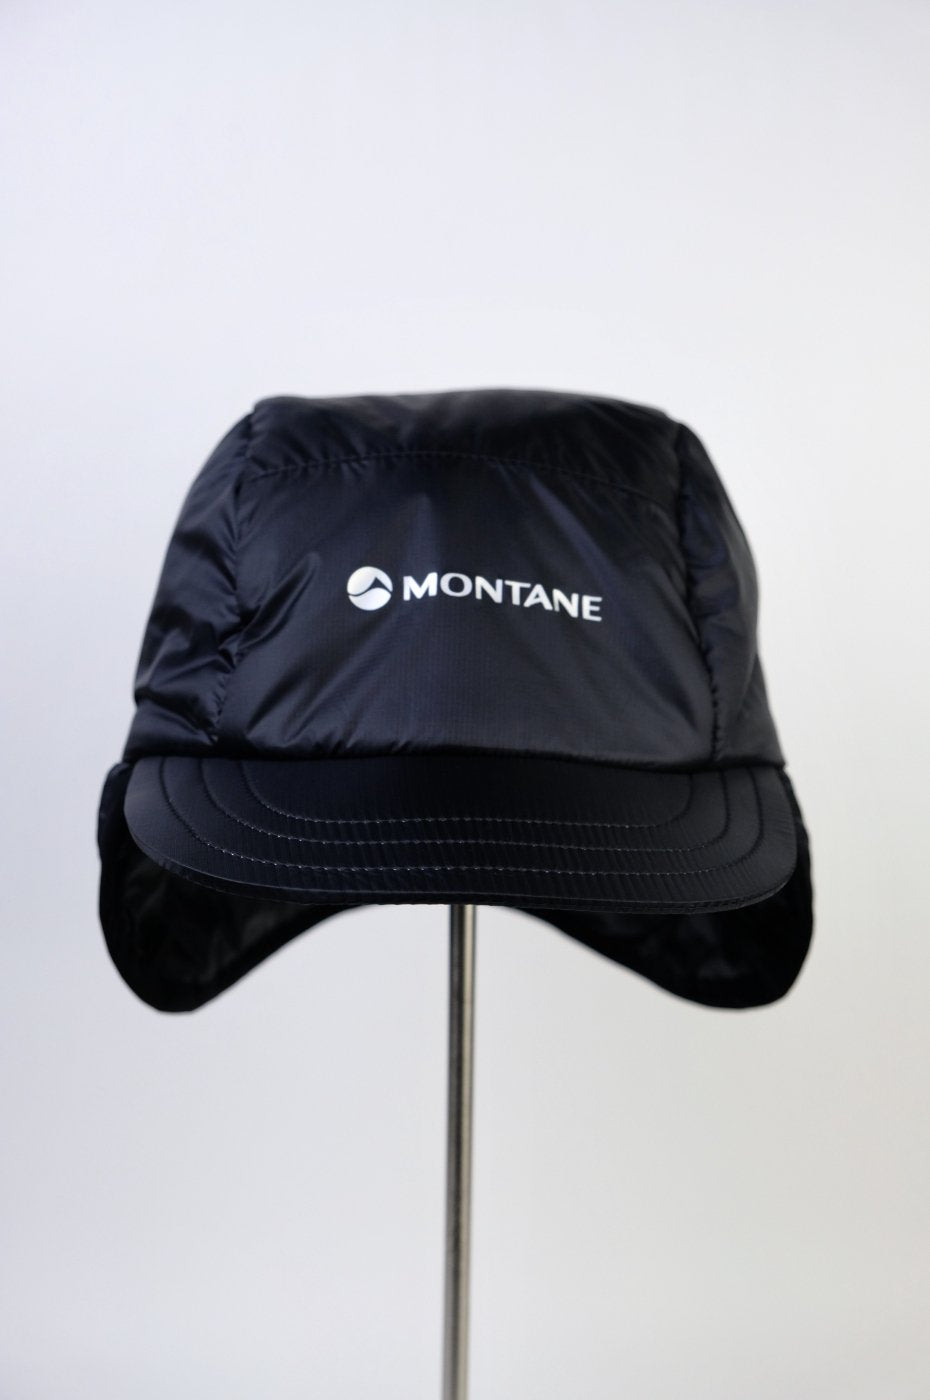 MONTANE "INSULATED MOUNTAIN CAP"